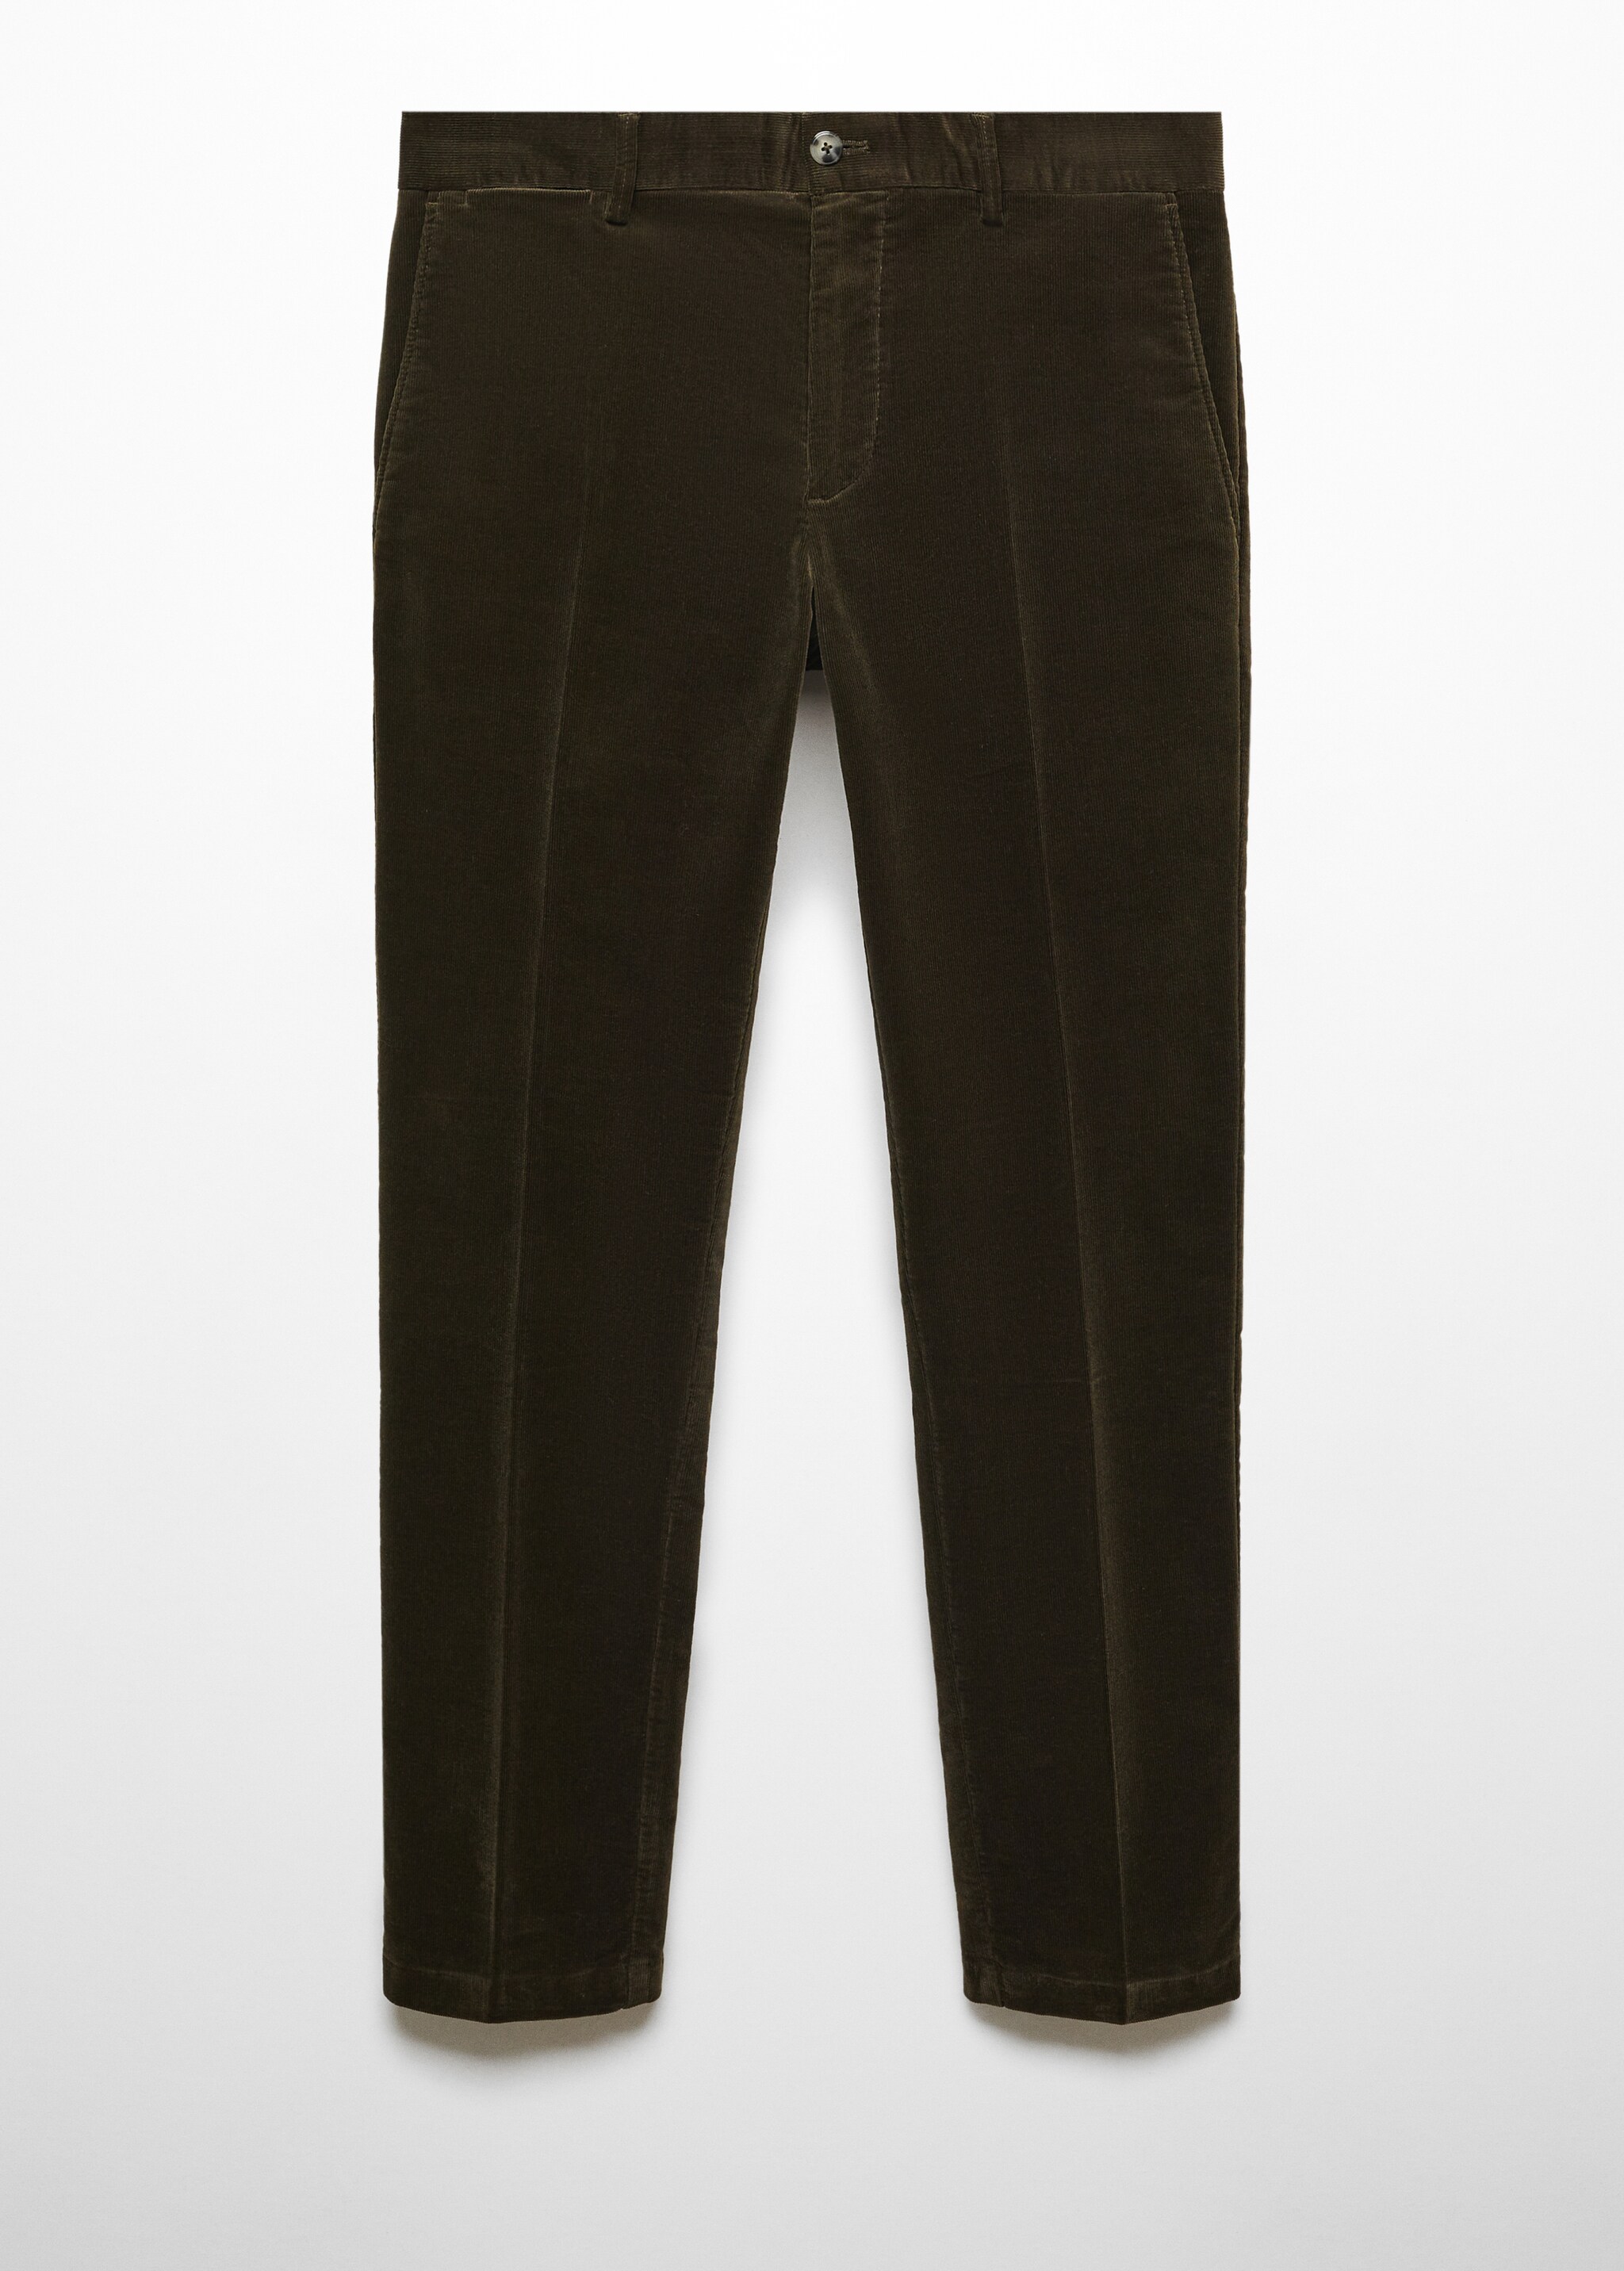 Pantaloni slim-fit velluto a micro-coste - Articolo senza modello